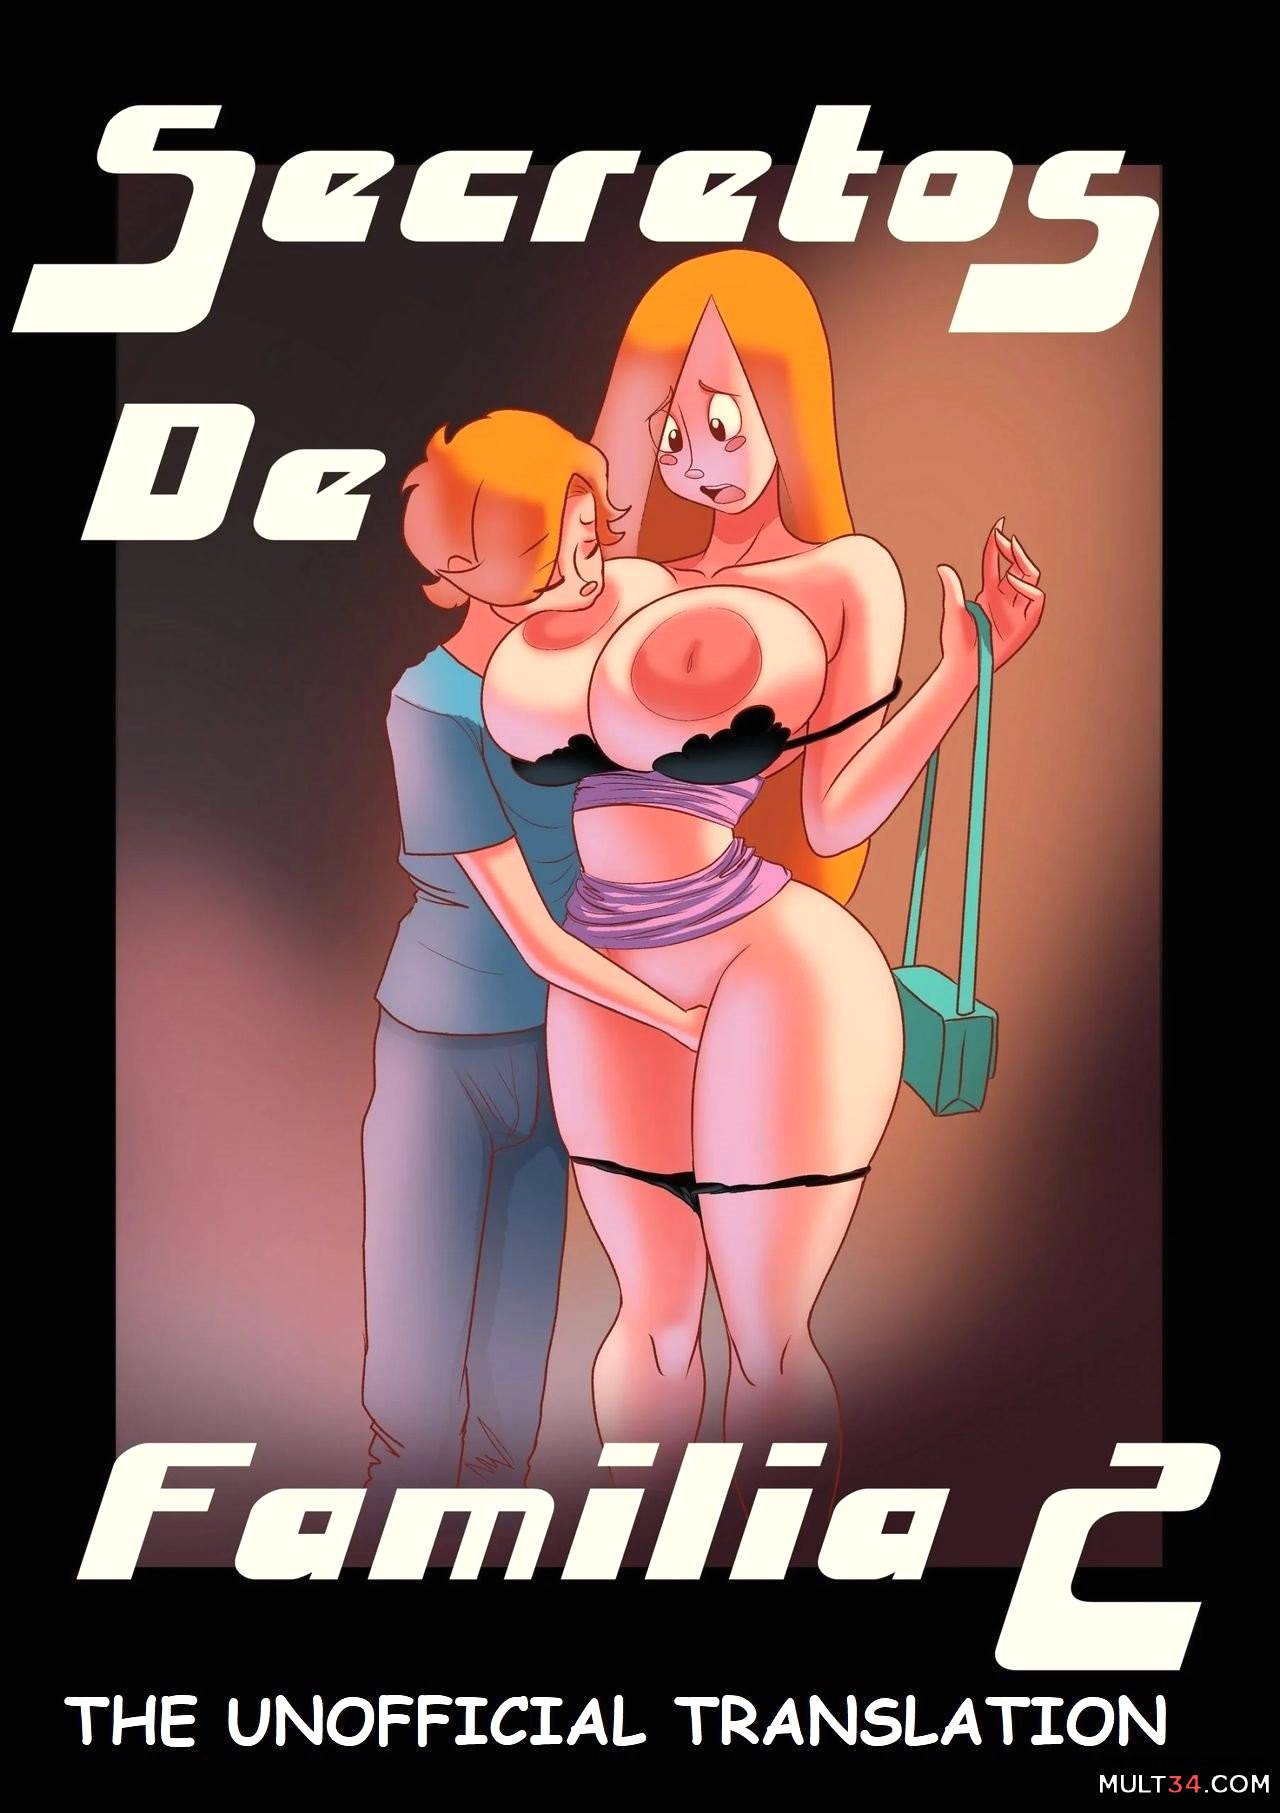 Porn familias